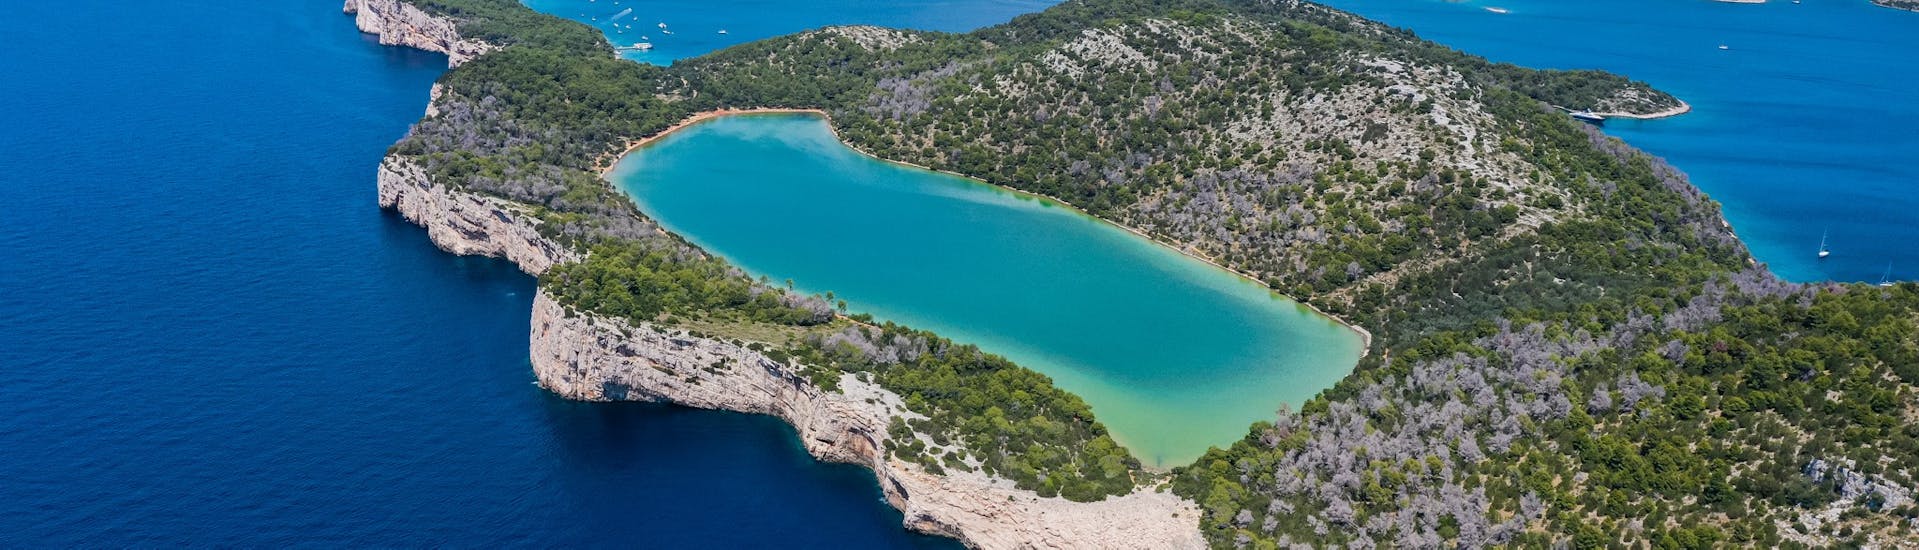 Het Nationaal Park Kornati dat bezocht kan worden tijdens de Boottocht naar het Nationaal Park Kornati & Telašćica vanuit Zadar met lunch met Sun Sailing Zadar.